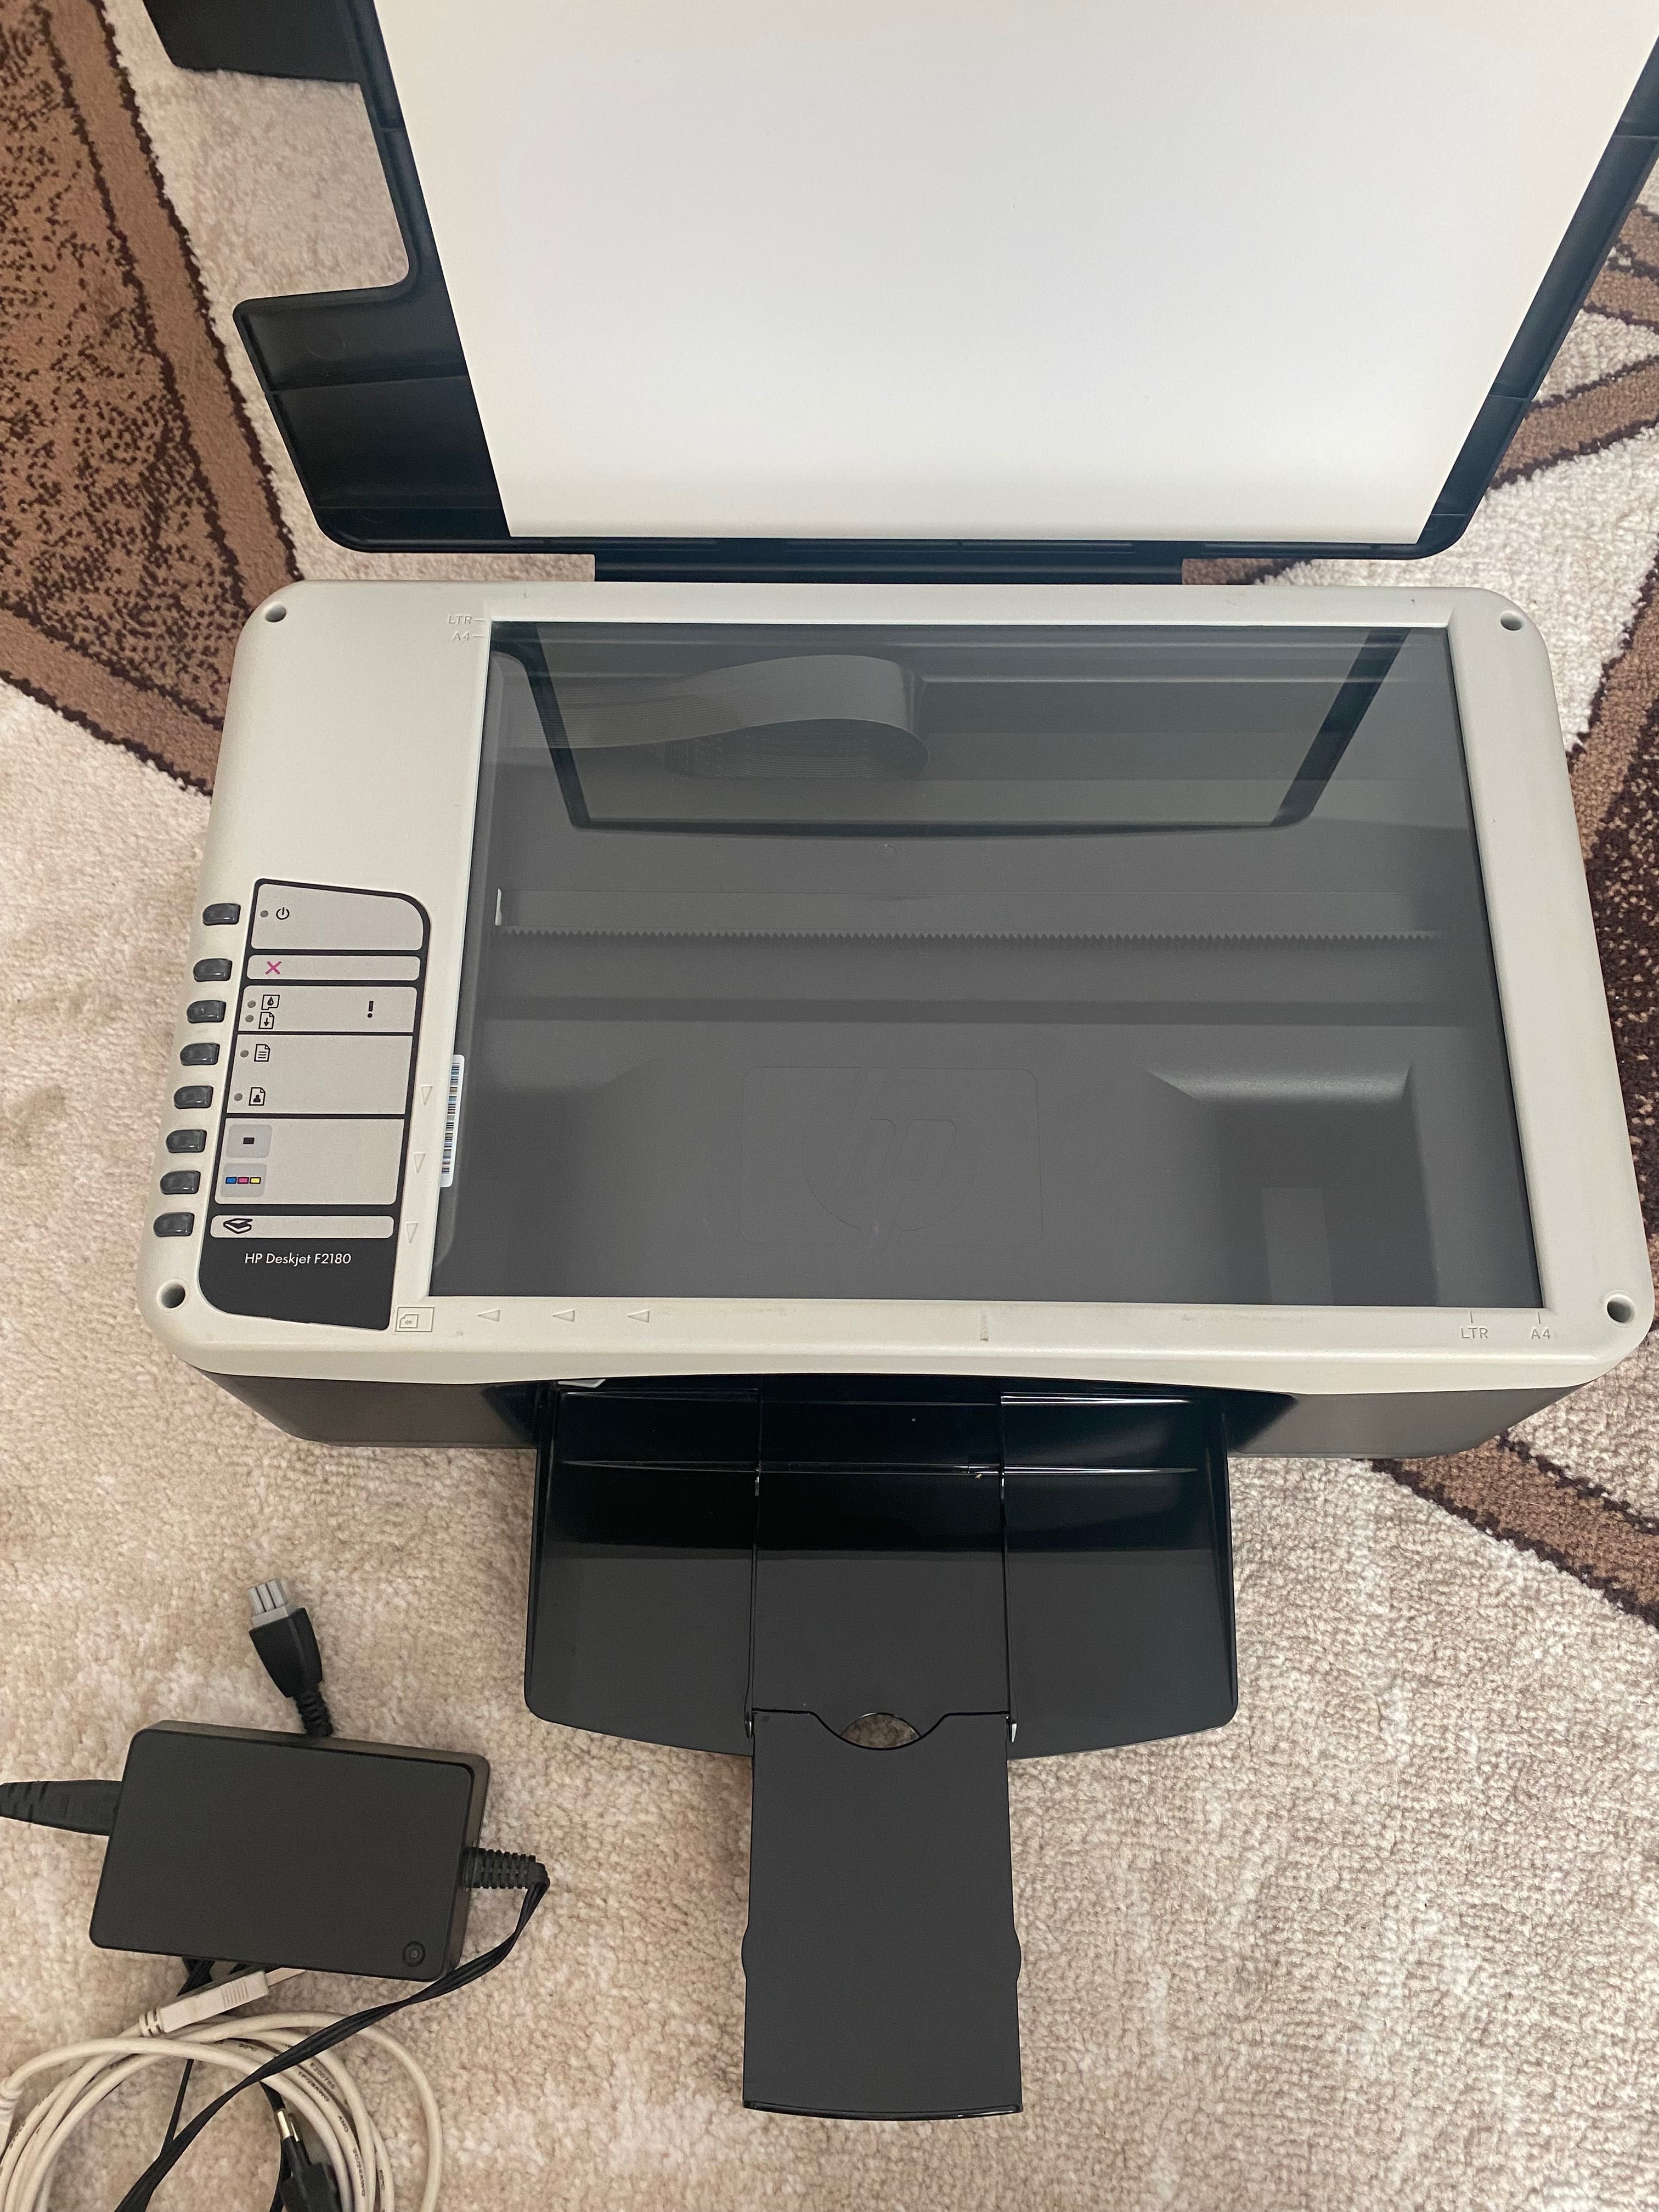 Multifuncțional HP Deskjet F2180 imprimanta, scaner